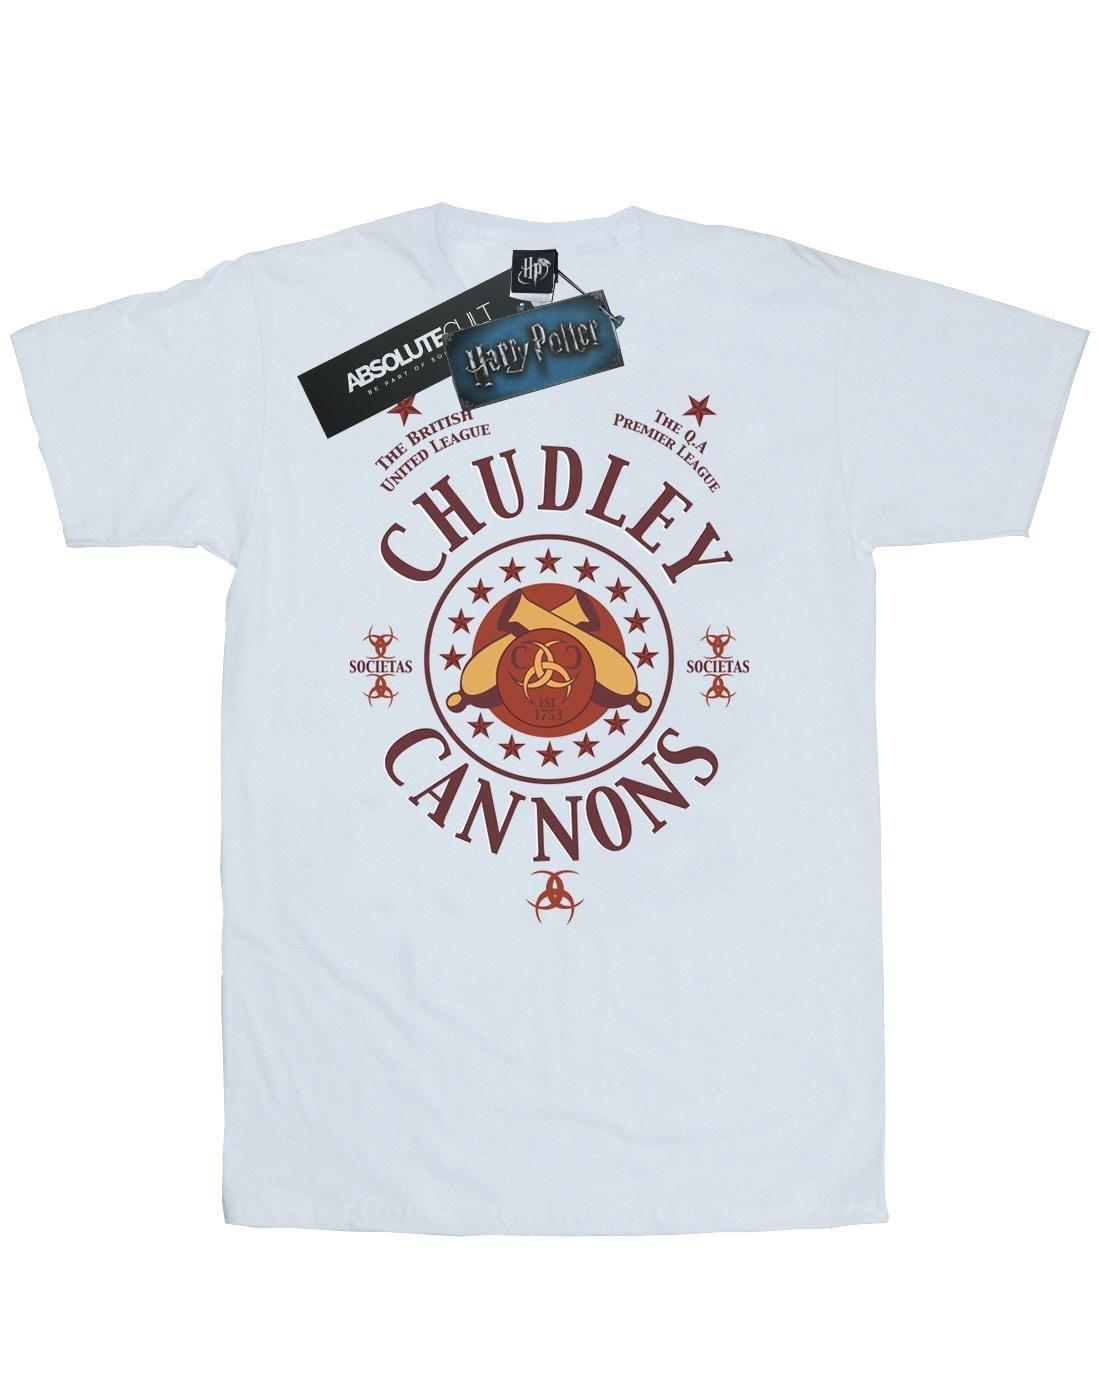 Chudley Cannons Logo Tshirt Herren Weiss 3XL von Harry Potter